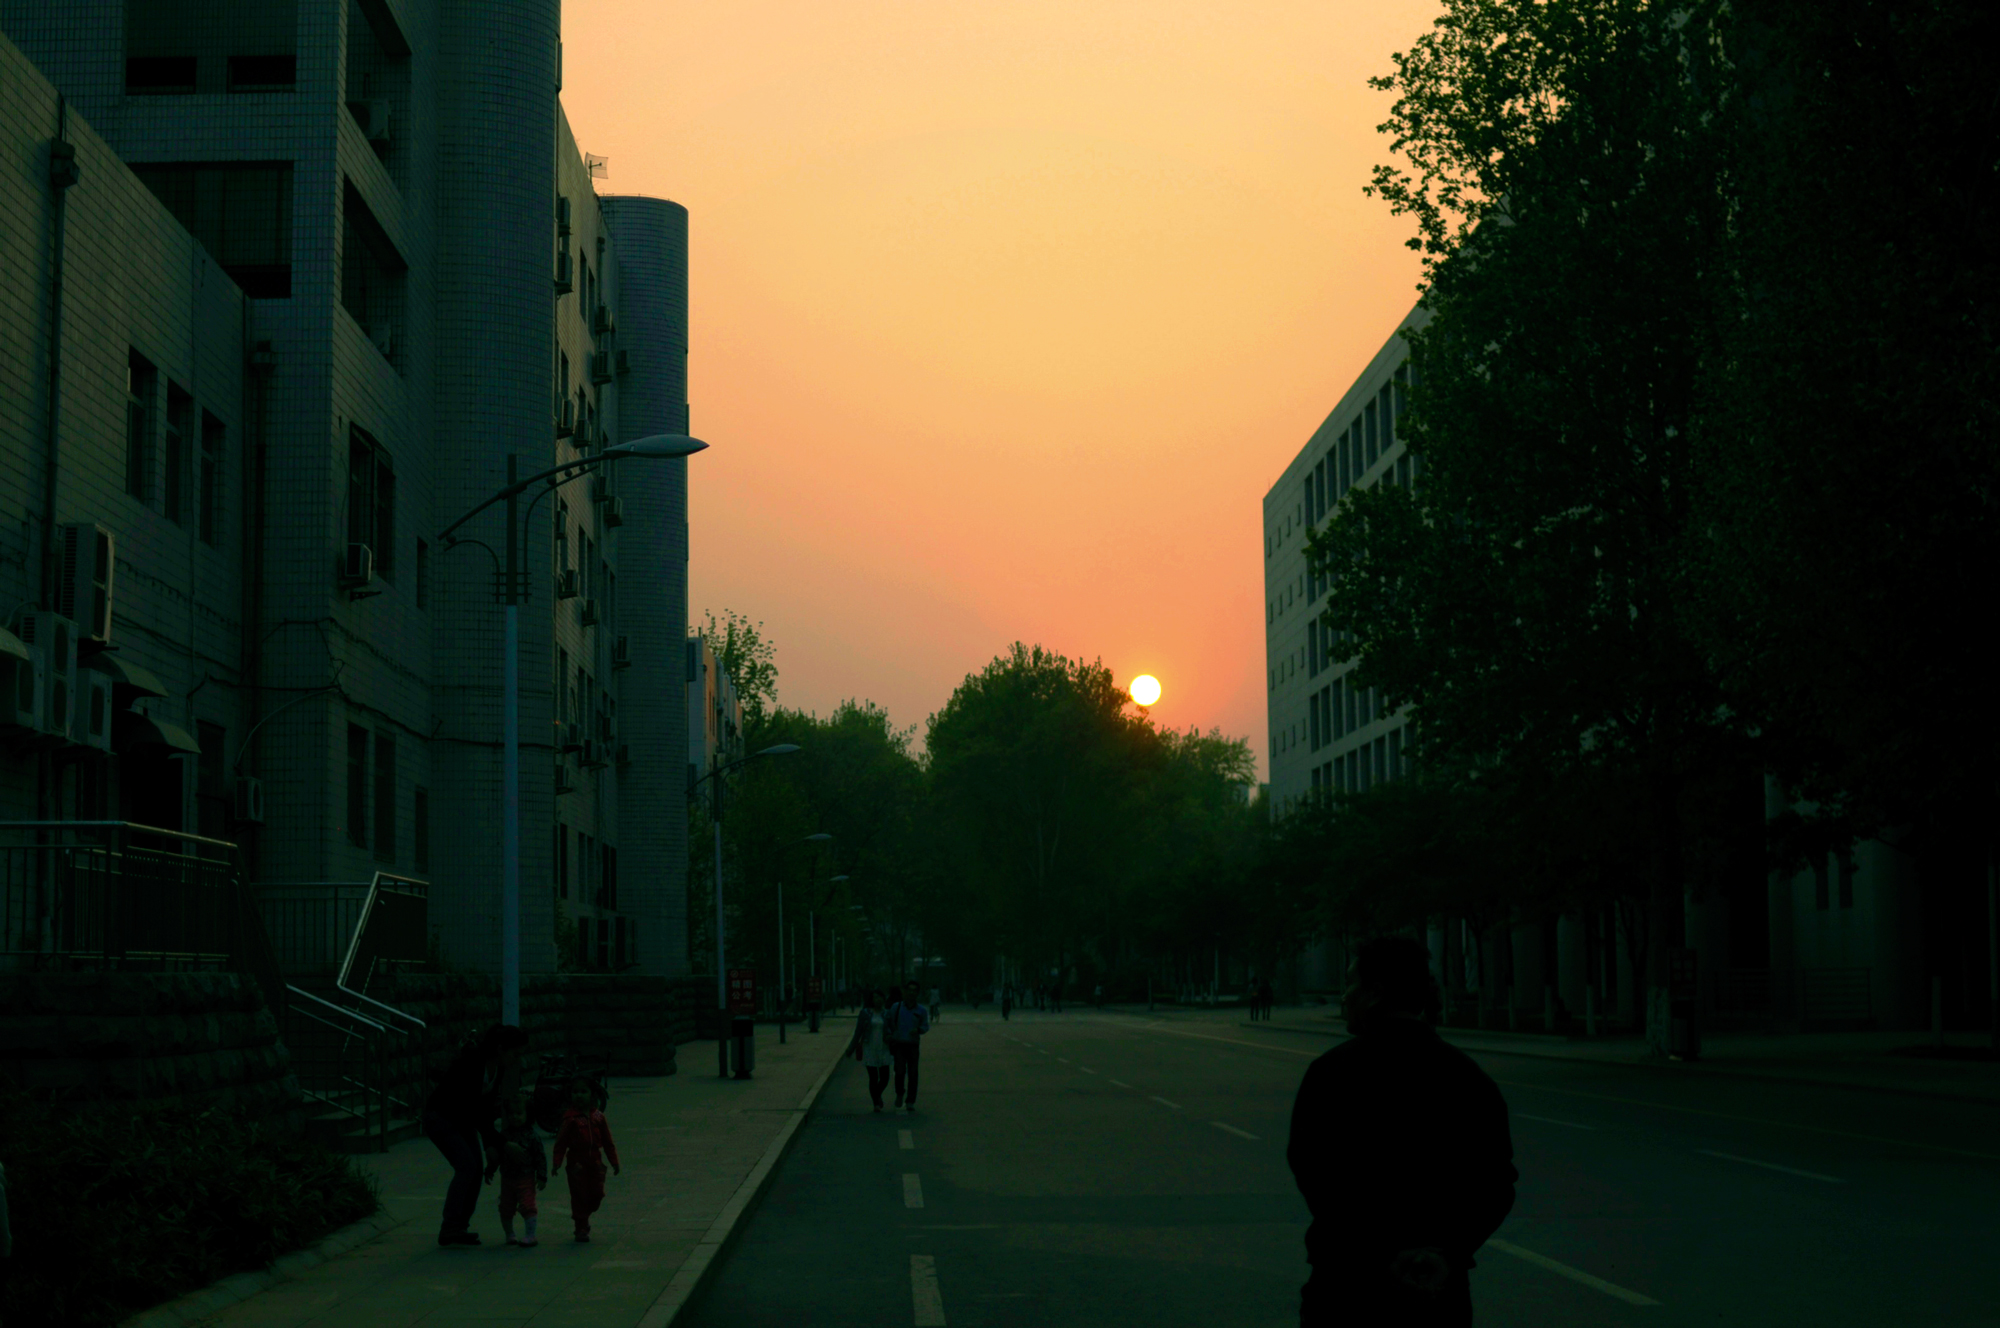 Sunset at Shandong University